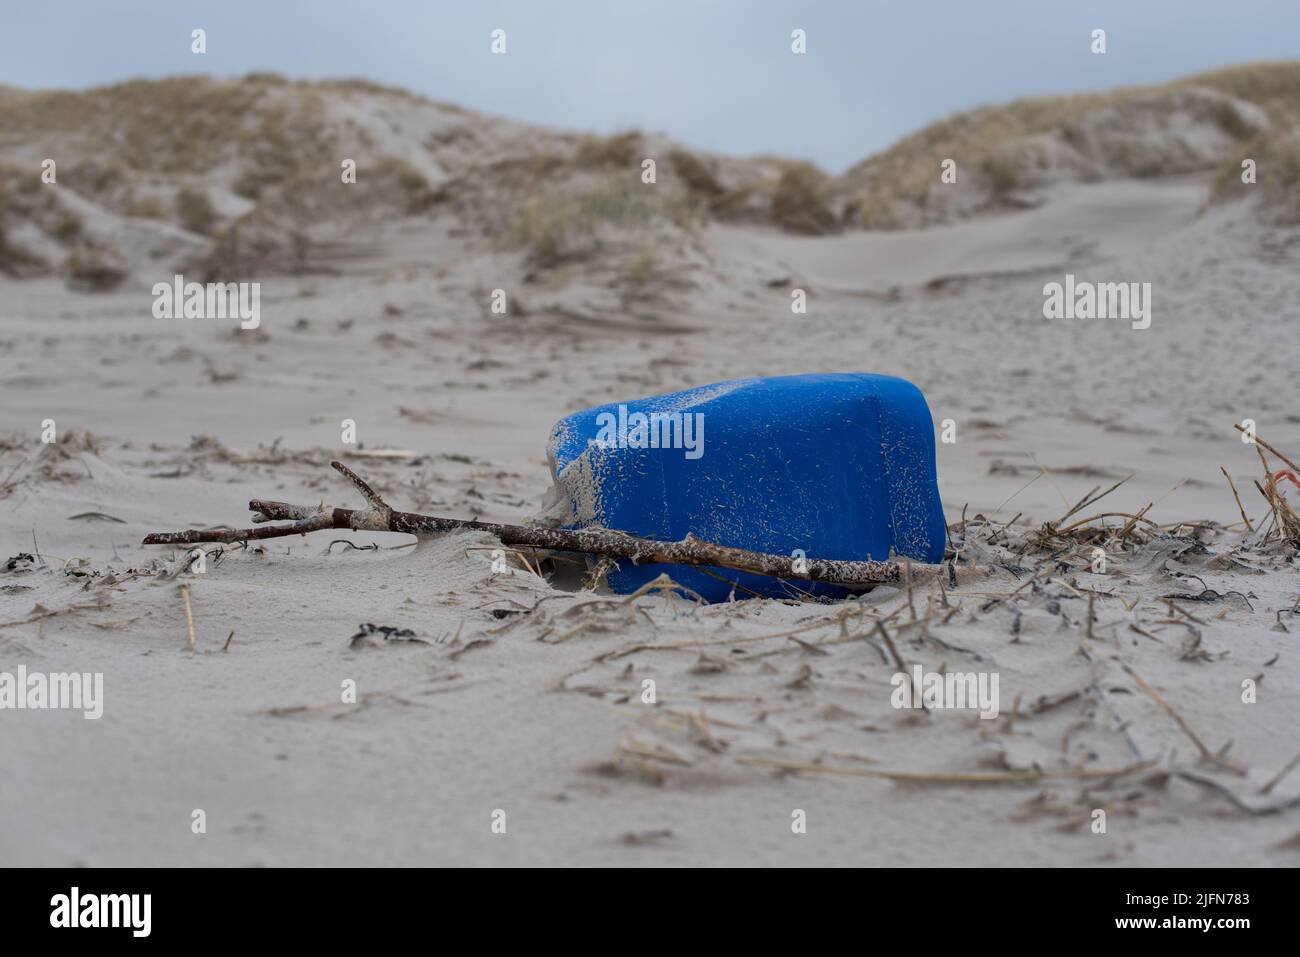 Nahaufnahme eines aufgespülten blauen Plastikkanisters/Kanisters am Strand vor den Sanddünen Stockfoto